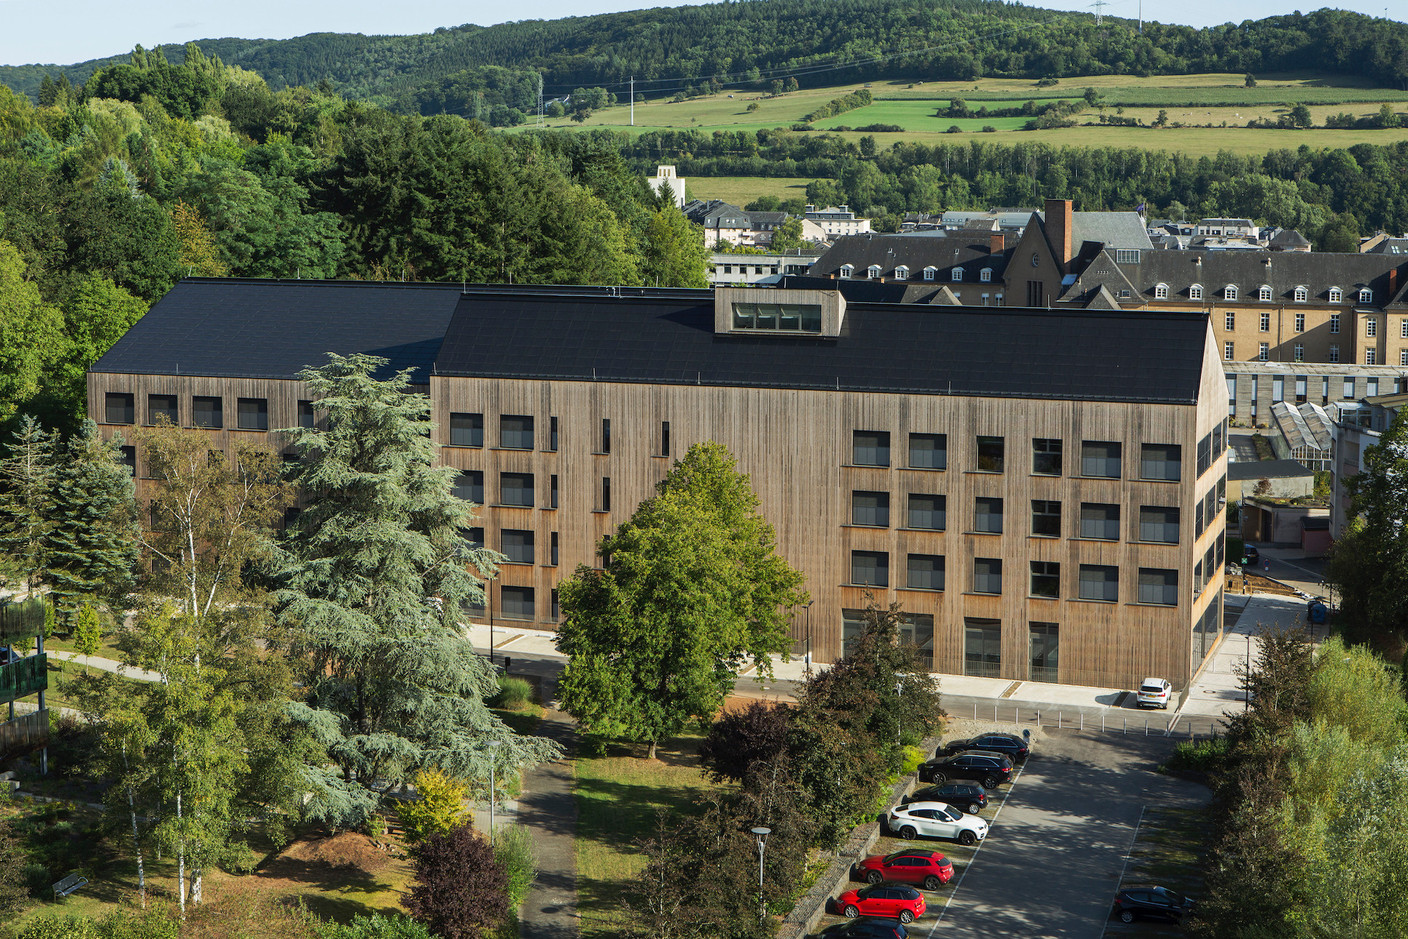 Le lycée technique pour professions de santé, Ettelbruck est un projet pilote mené par l’Administration des bâtiments publics. (Photo: Christian Aschman)